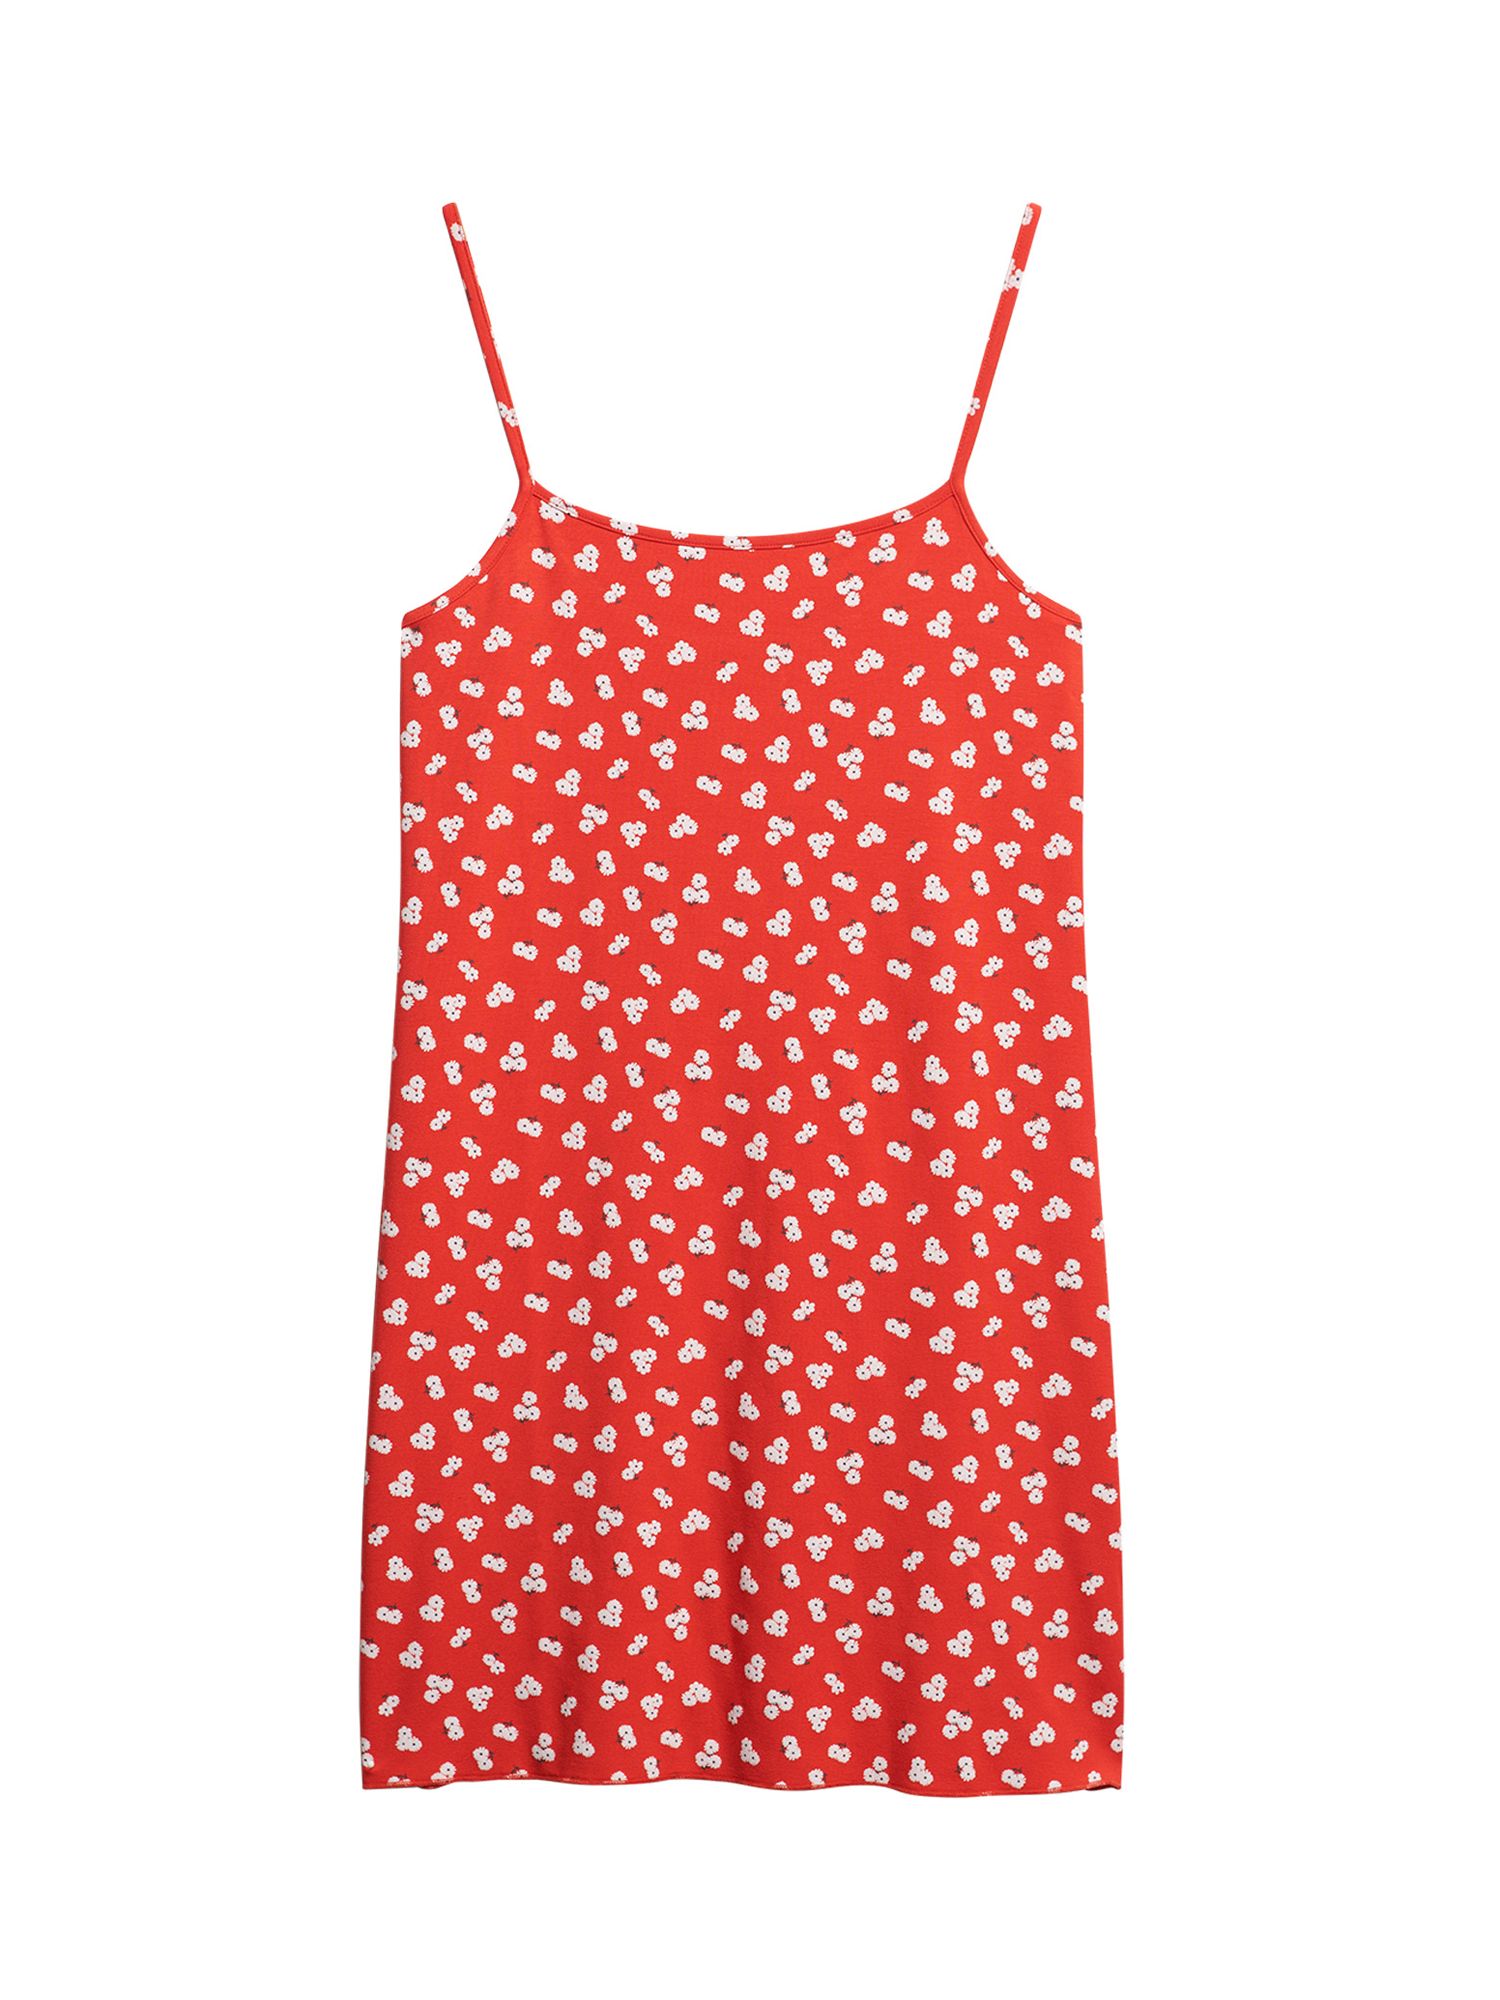 Superdry Printed Cami Jersey Mini Dress, Red Petal Print at John Lewis ...